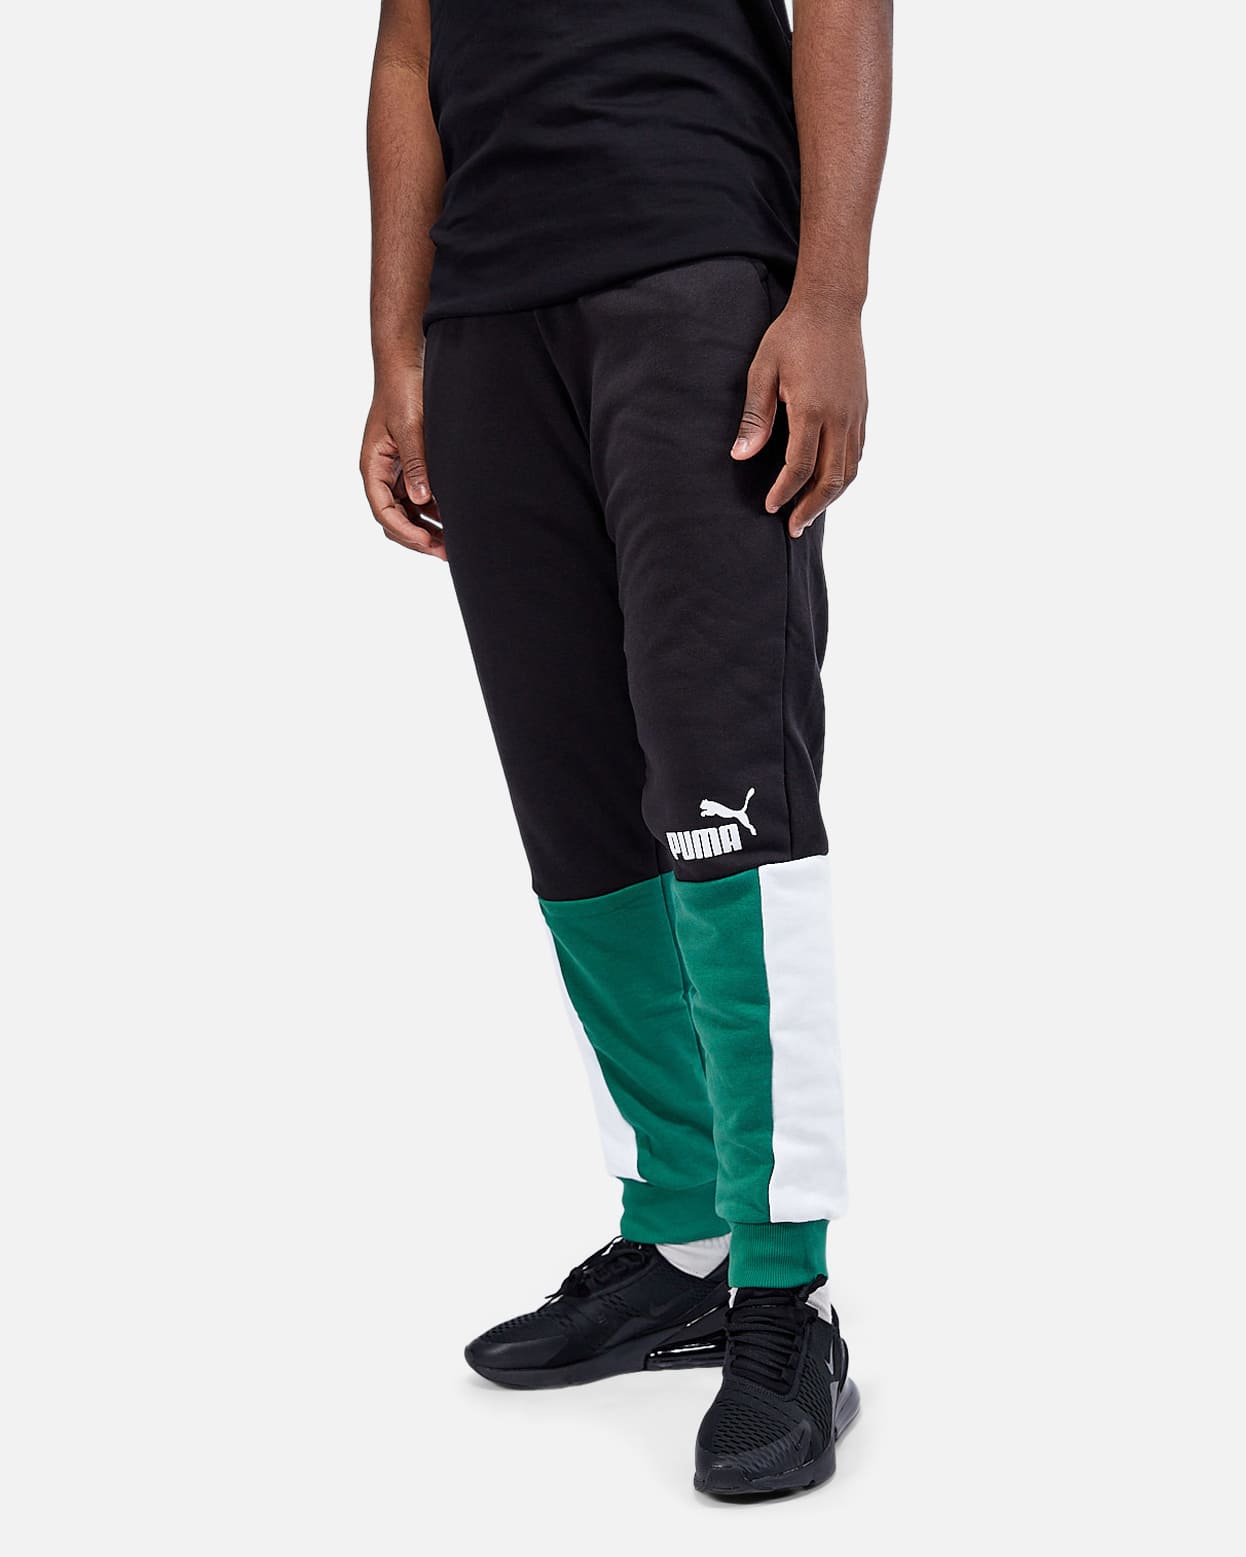 Pantalon Puma Power - Noir/Blanc/Vert